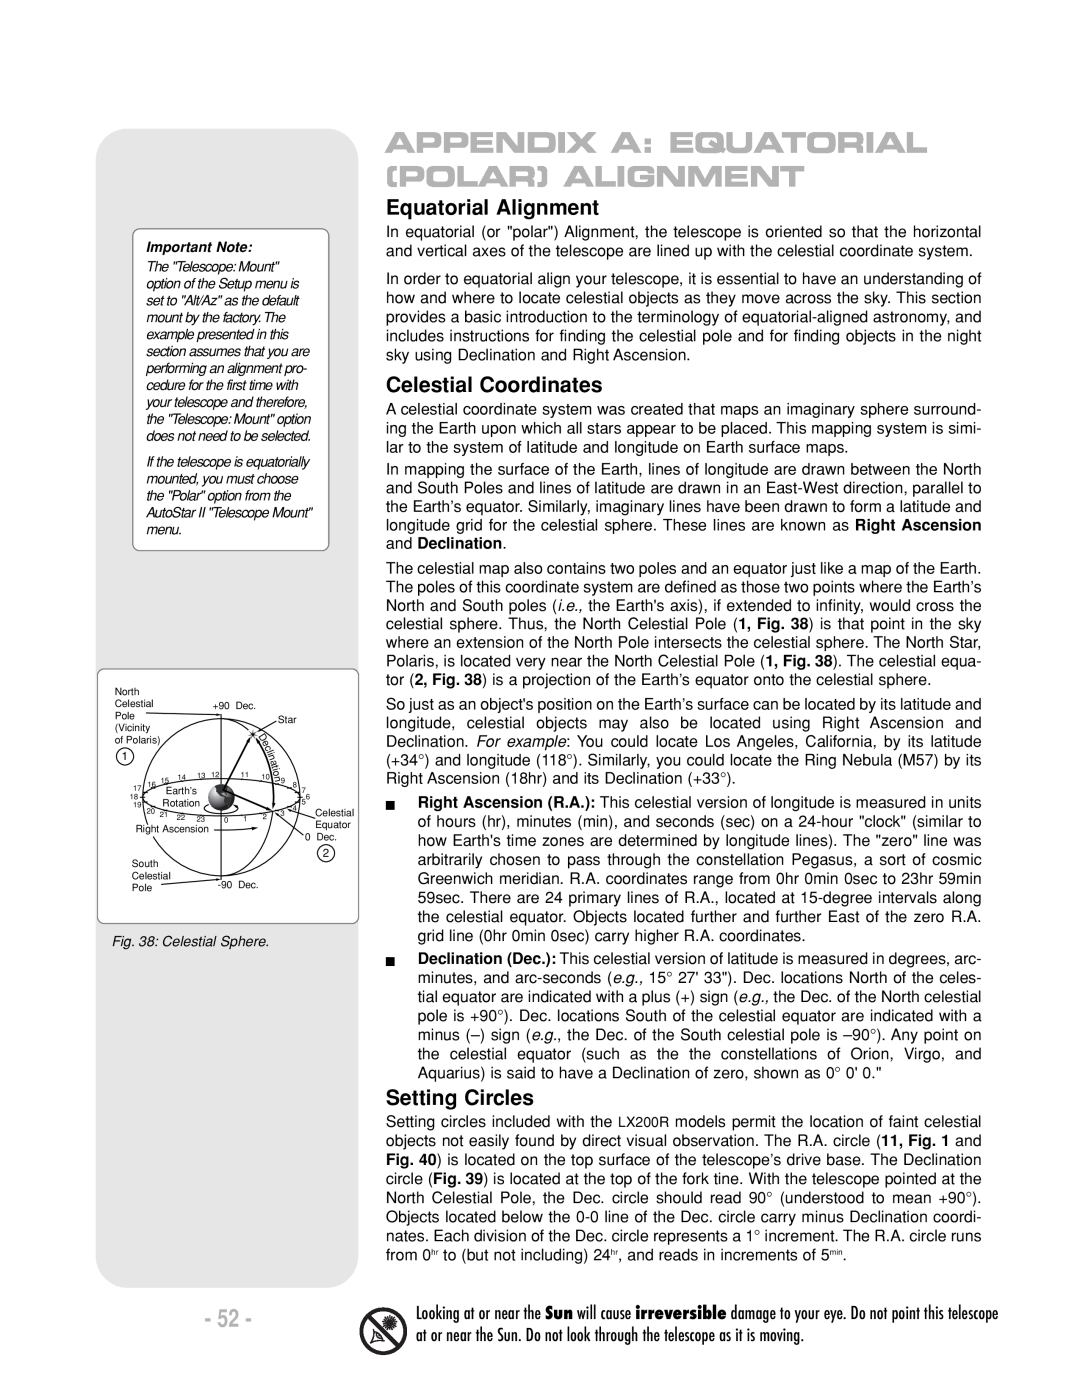 Meade LX200 R Equatorial Alignment, Celestial Coordinates, Setting Circles, Appendix A: Equatorial Polar Alignment 